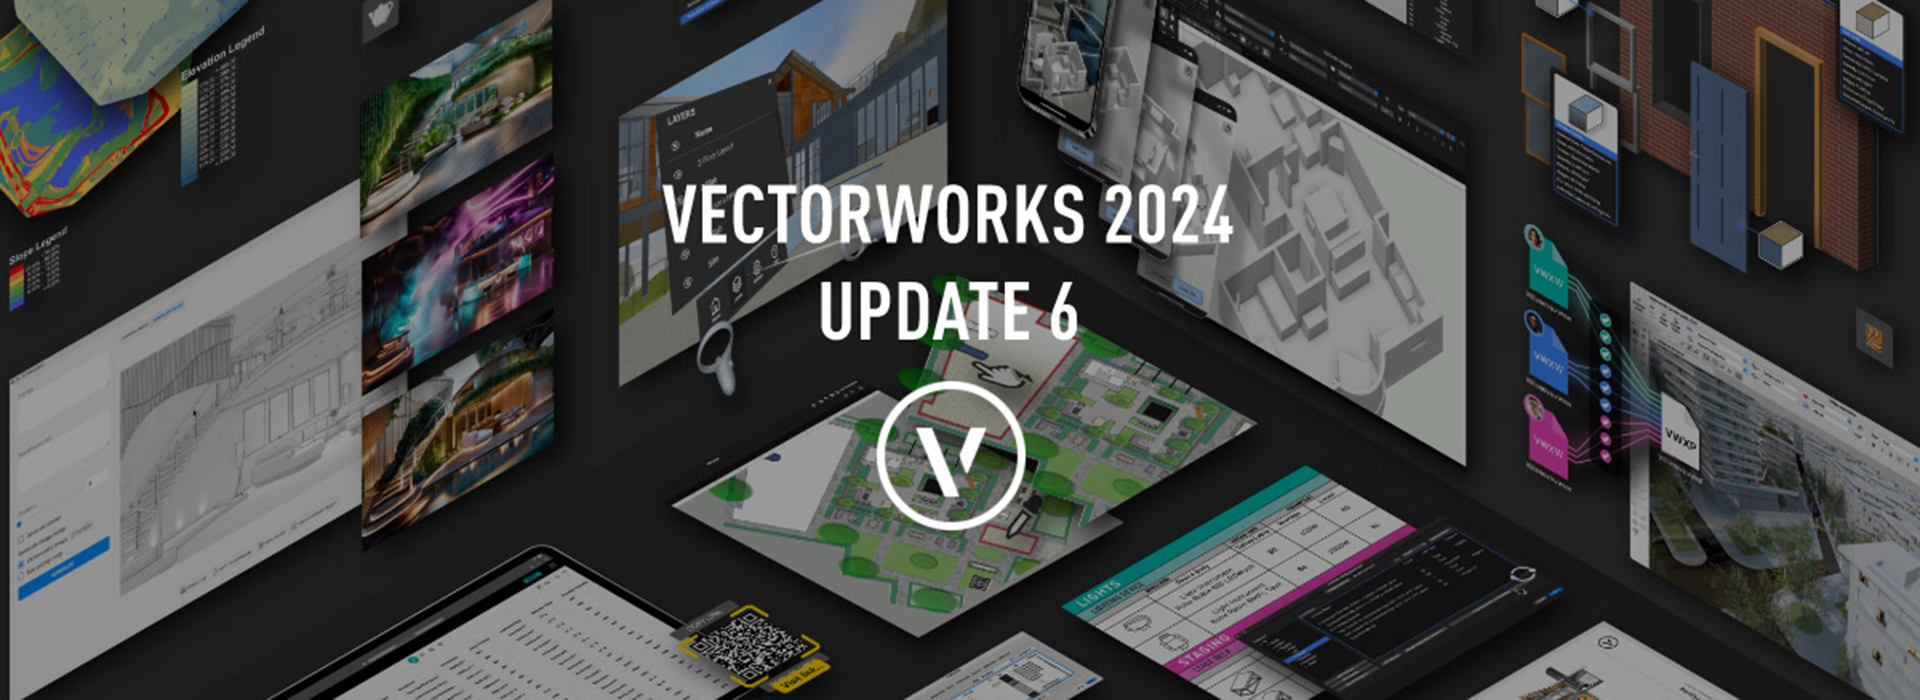 Schriftzug mit "Vectorworks 2024 Update 6"